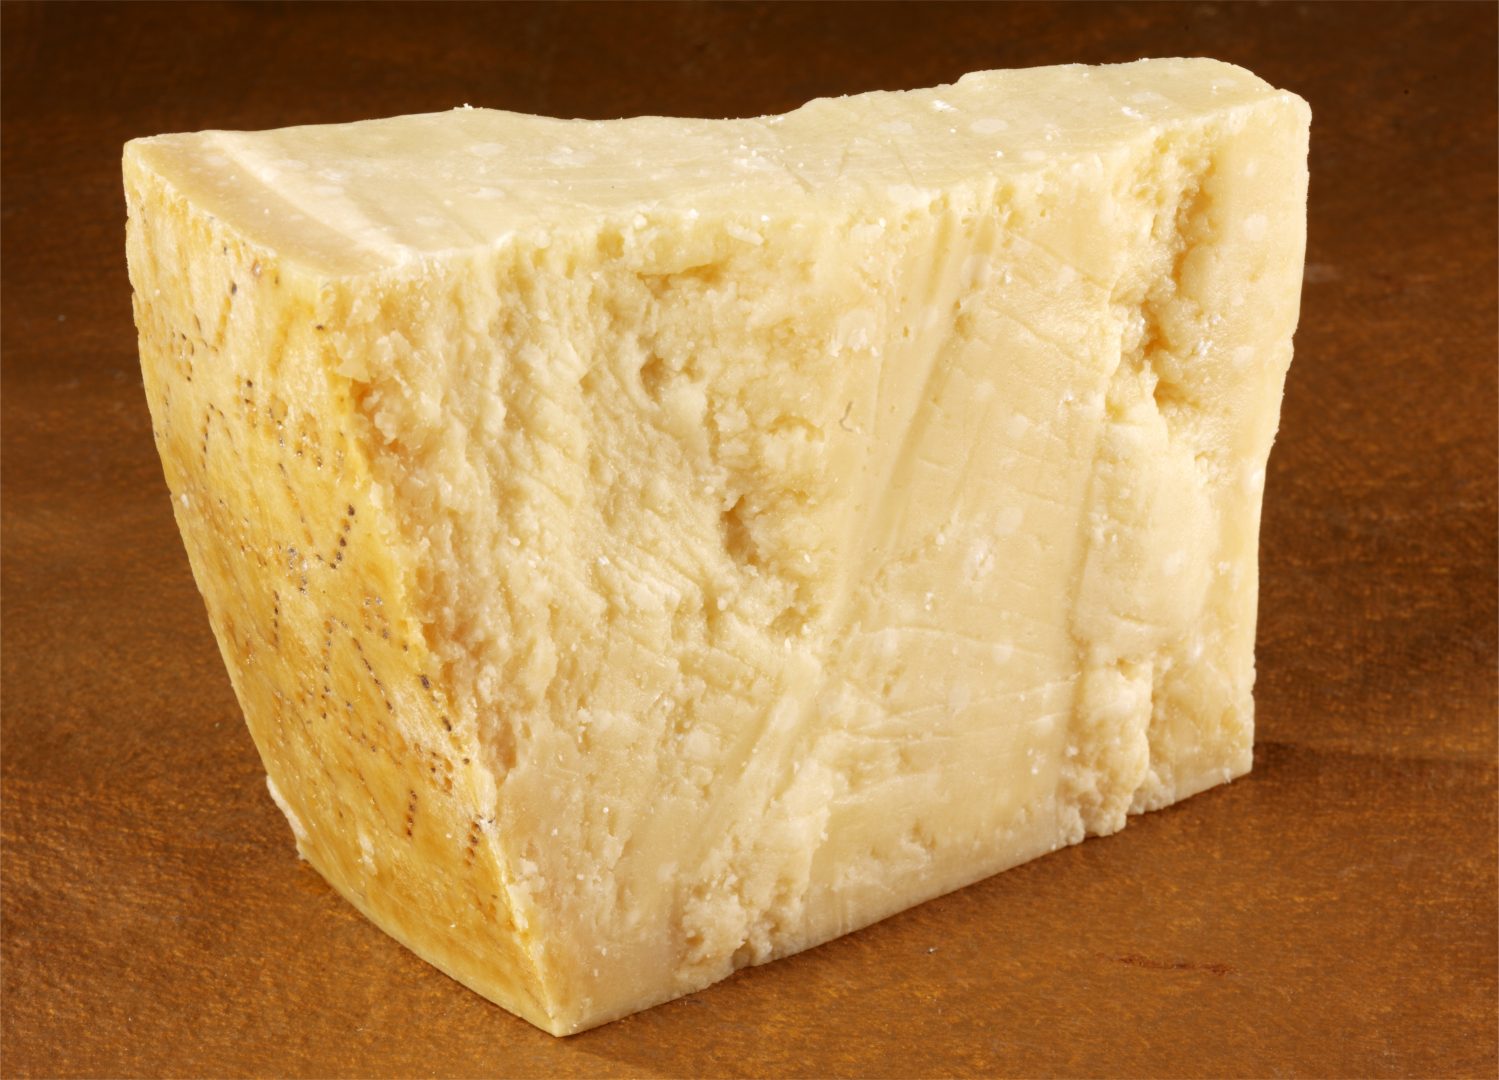 grana padano, italian cheese